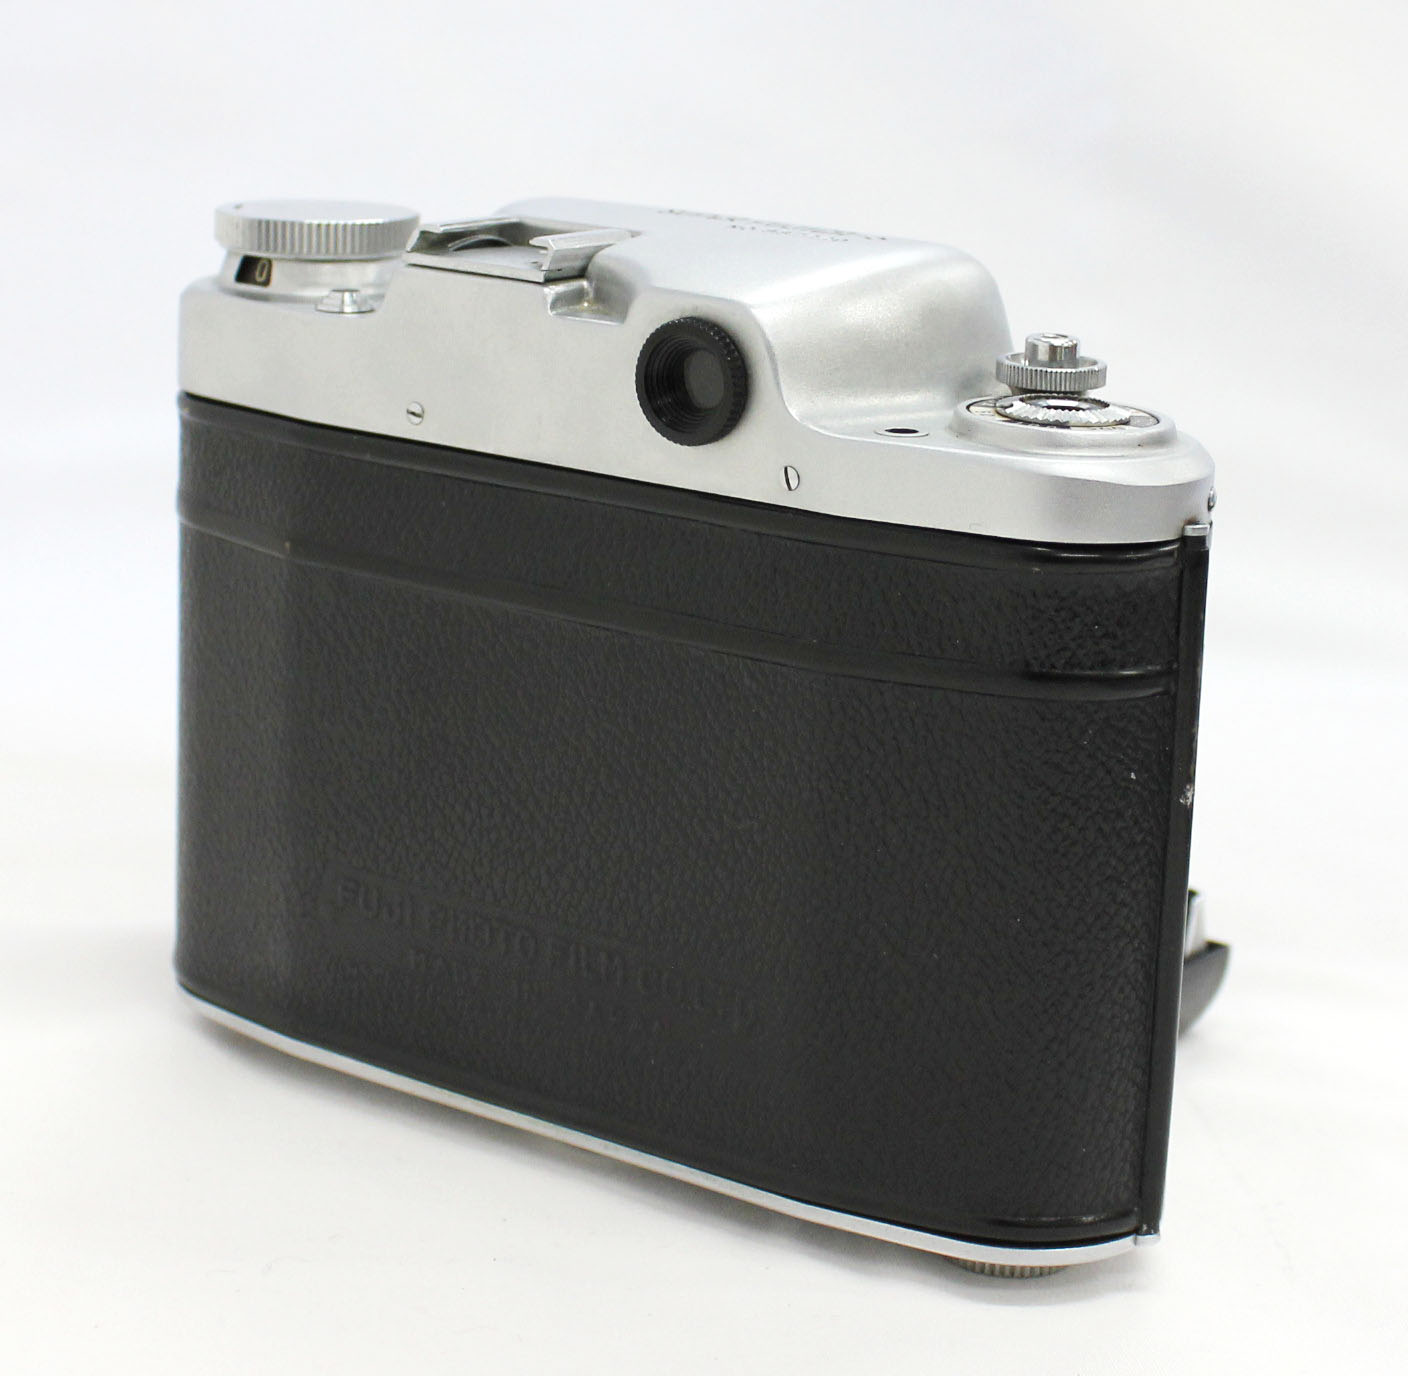  Fuji Super Fujica-6 Six 6x6 Medium Format Film Camera with Fujinar 75mm F/3.5 from Japan Photo 6